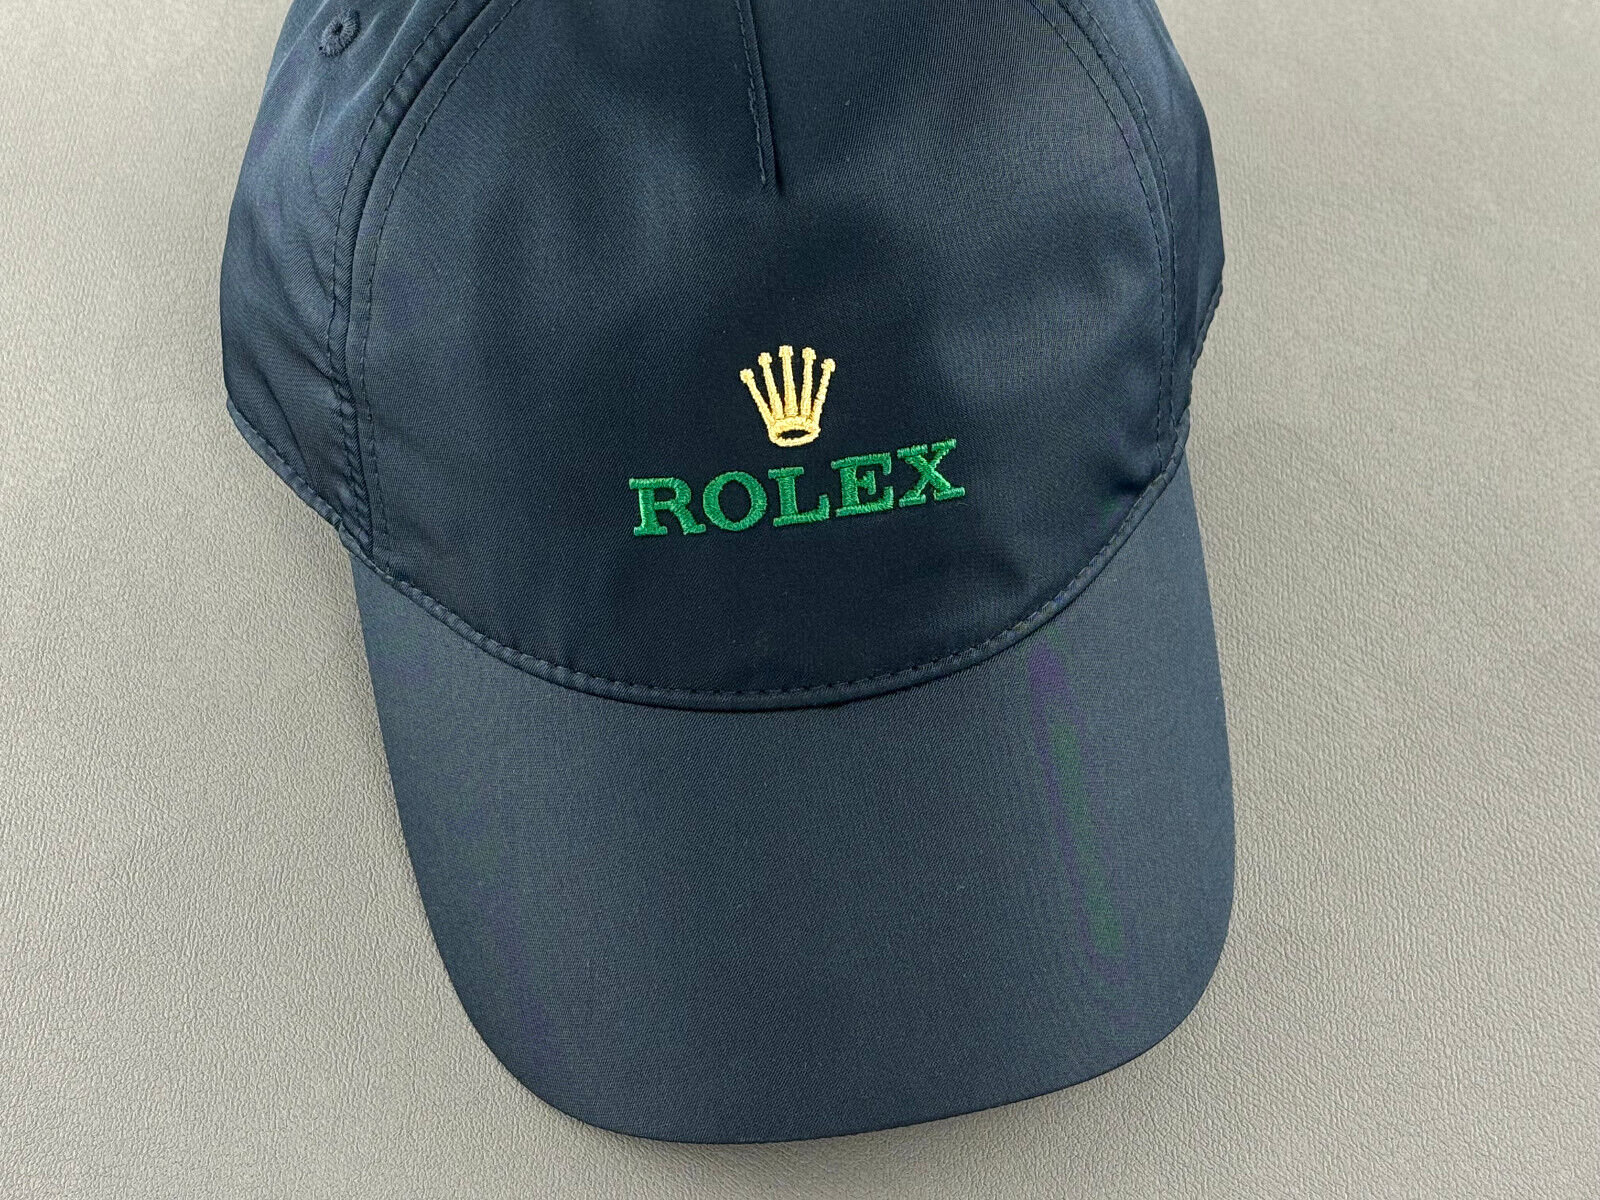 Rolex Cap Blau